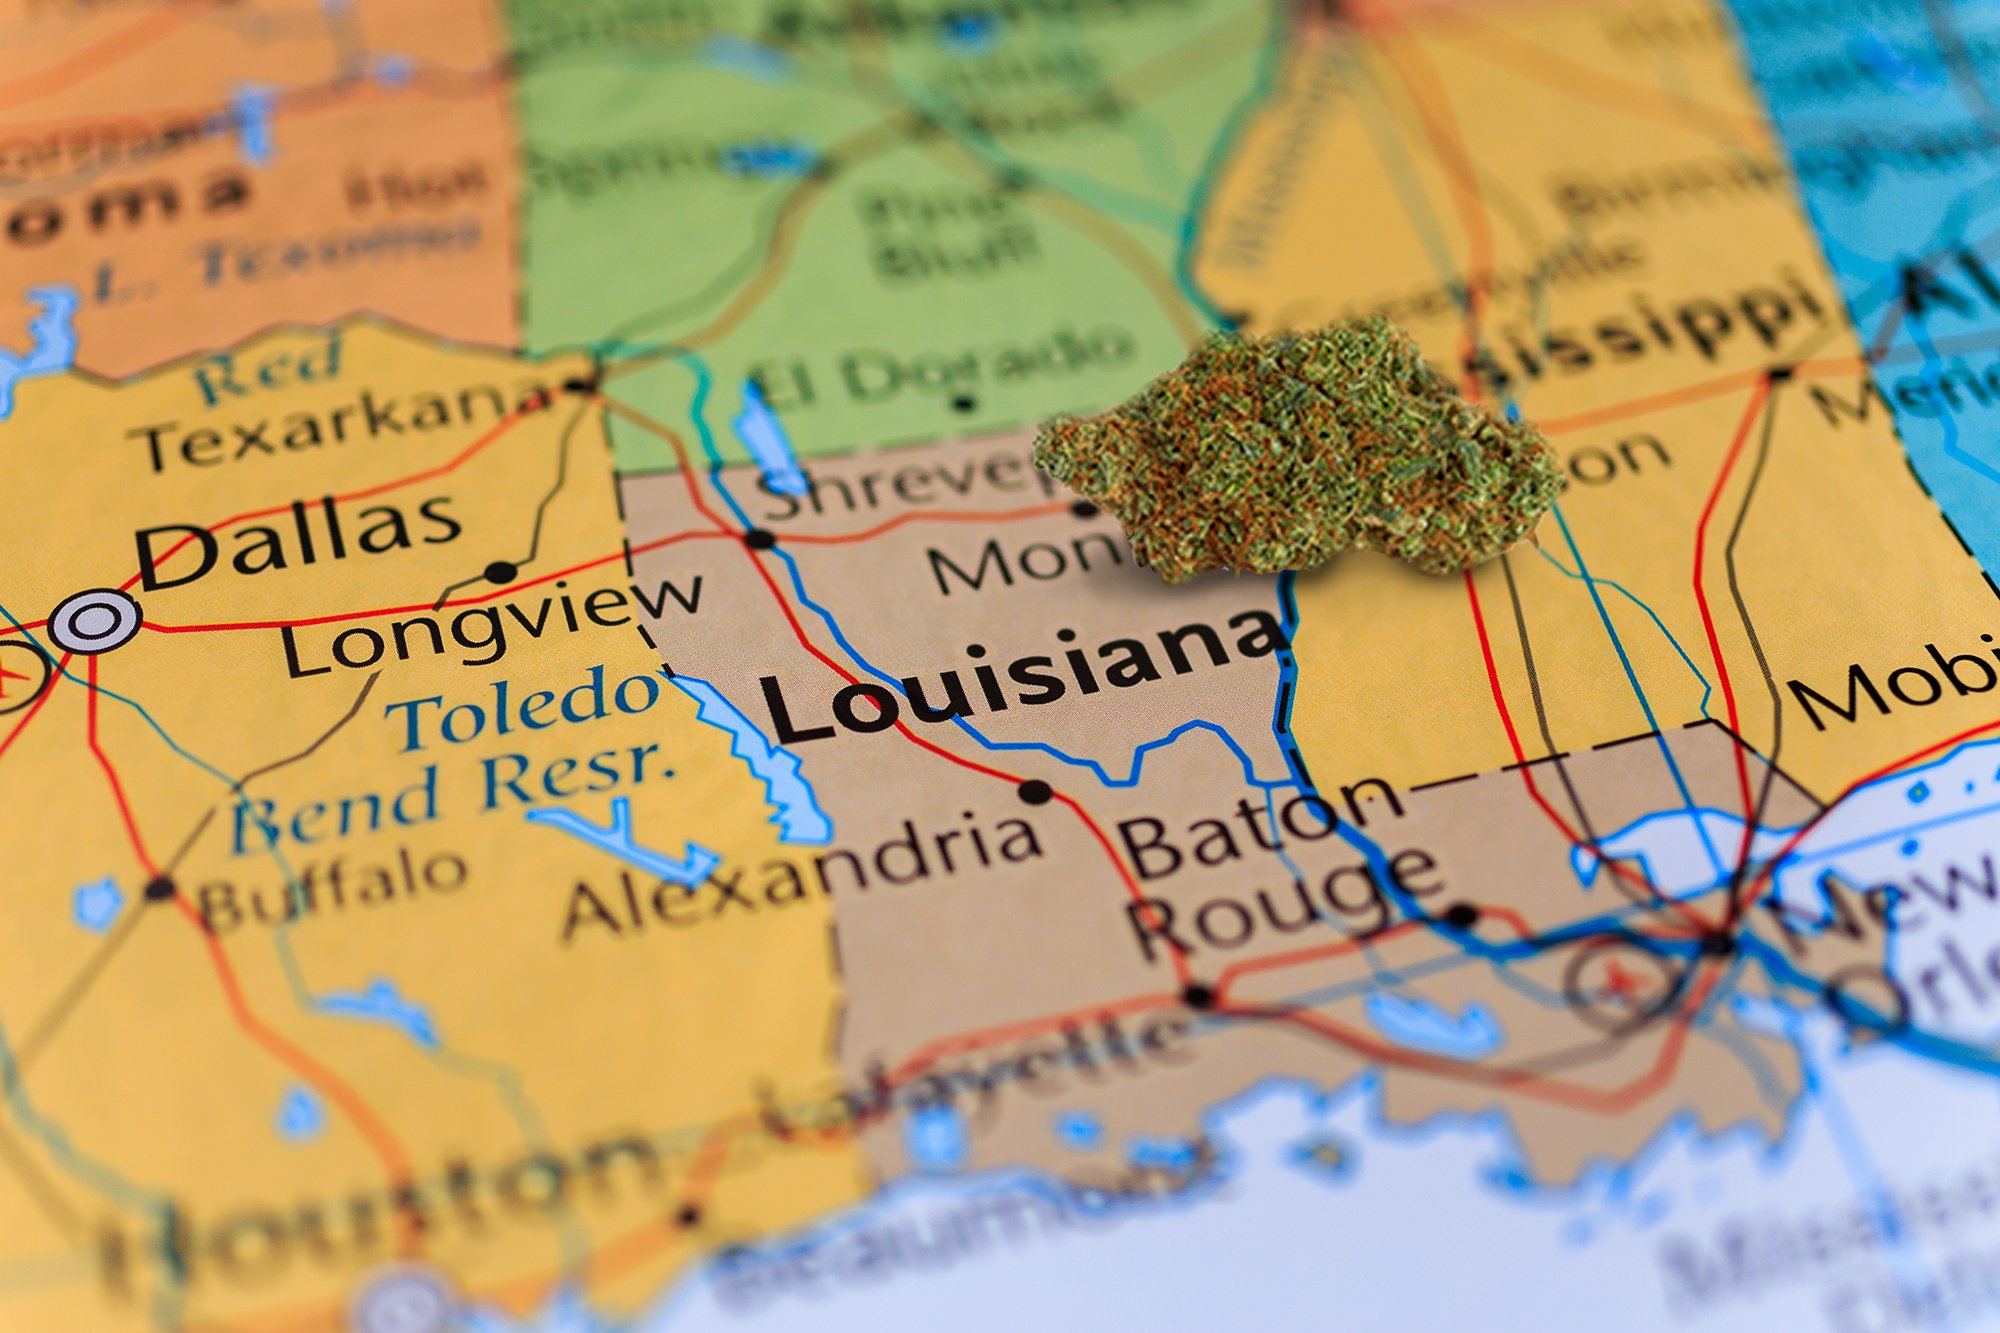 Louisiana Legal featured